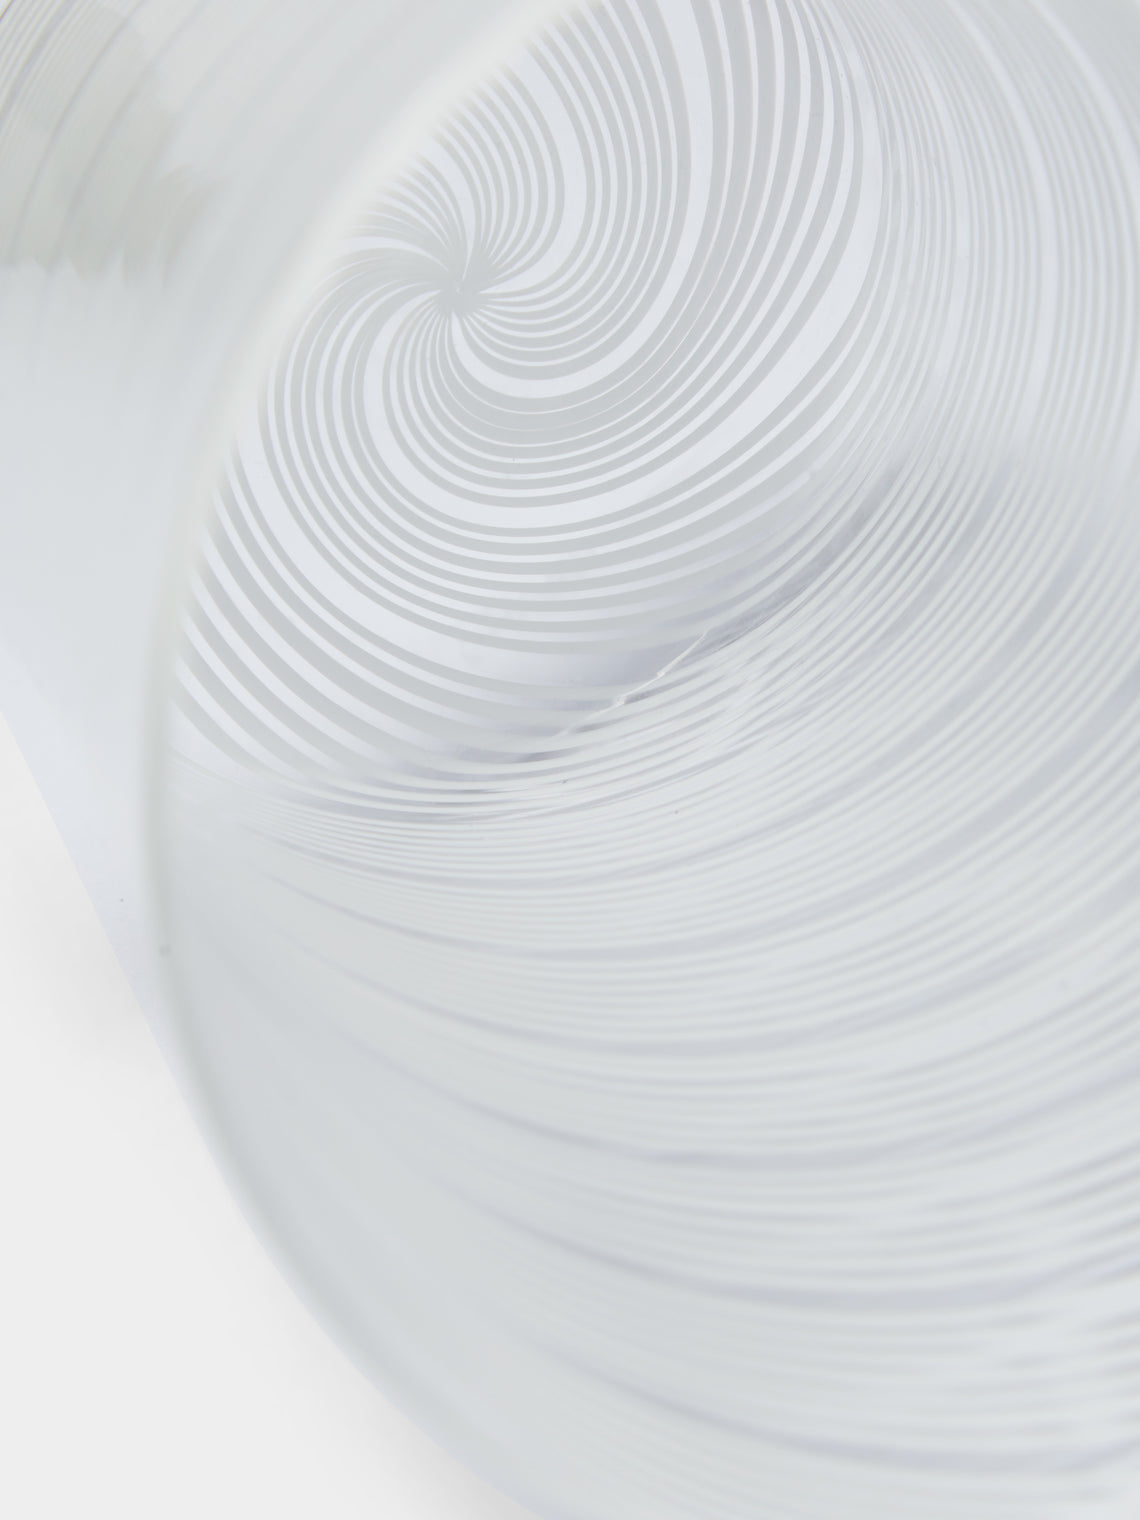 NasonMoretti - Canova Hand-Blown Murano Glass Tumbler - White - ABASK